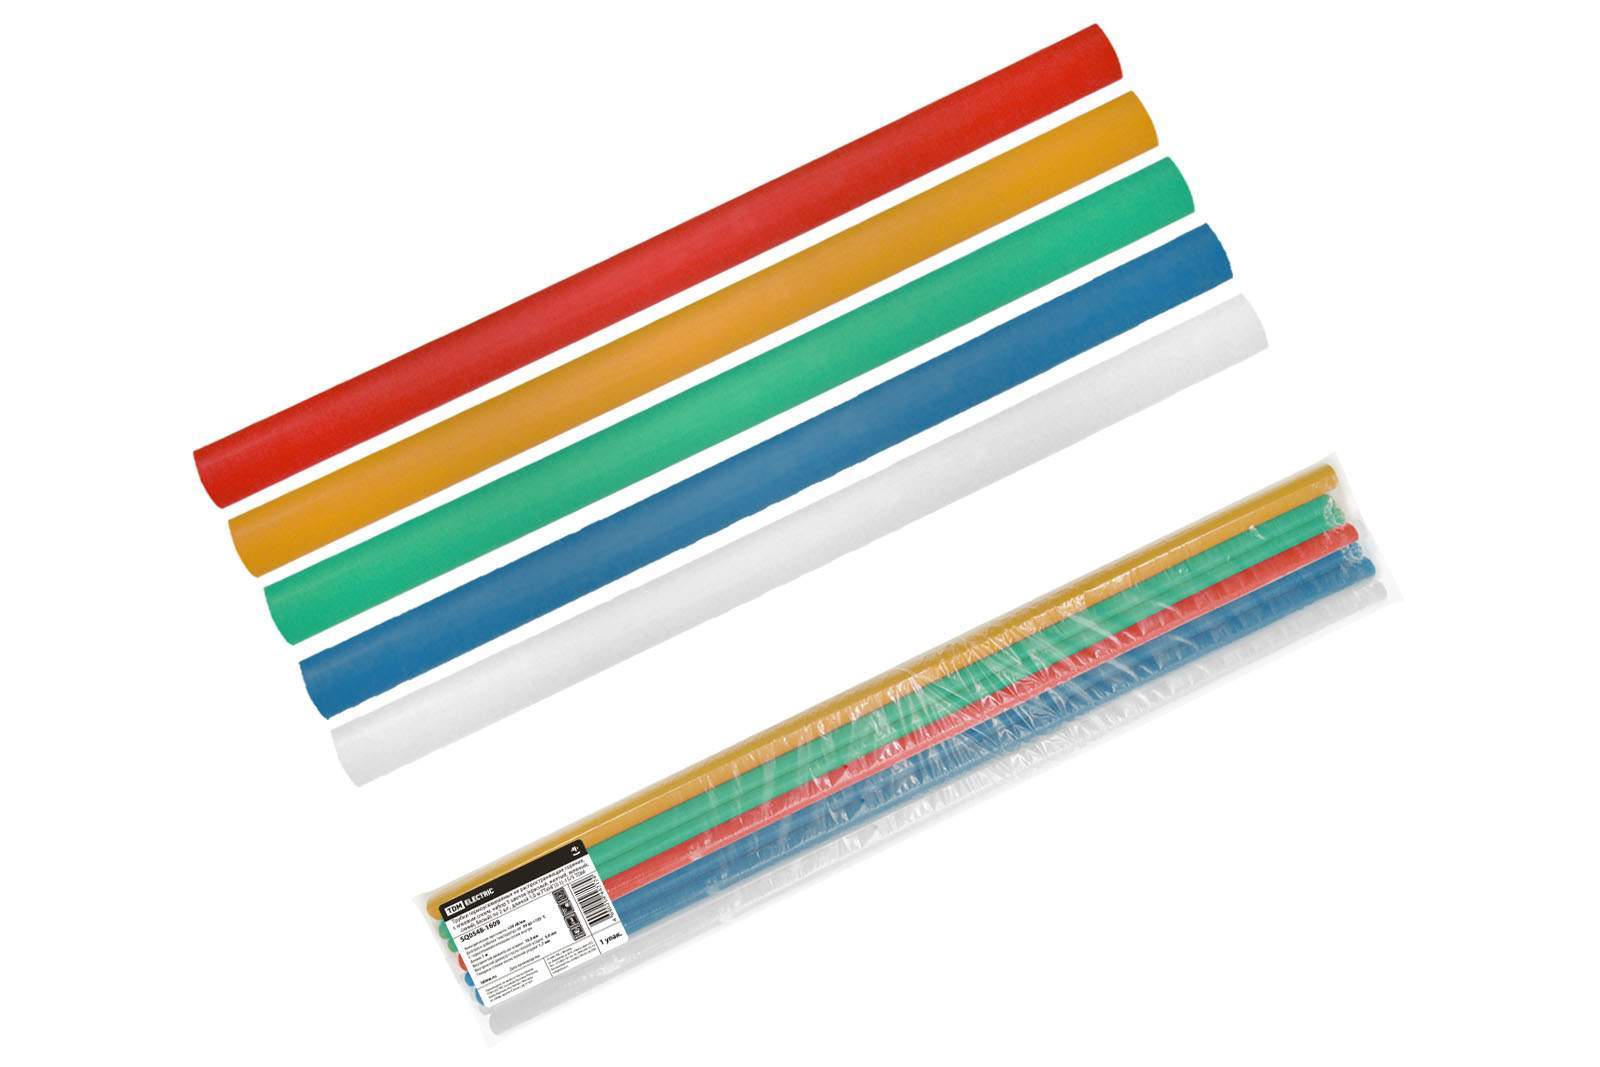 трубки термоусаживаемые, клеевые, набор 5 цветов по 2 шт. тткнг(3:1)-15/5 tdm от BTSprom.by